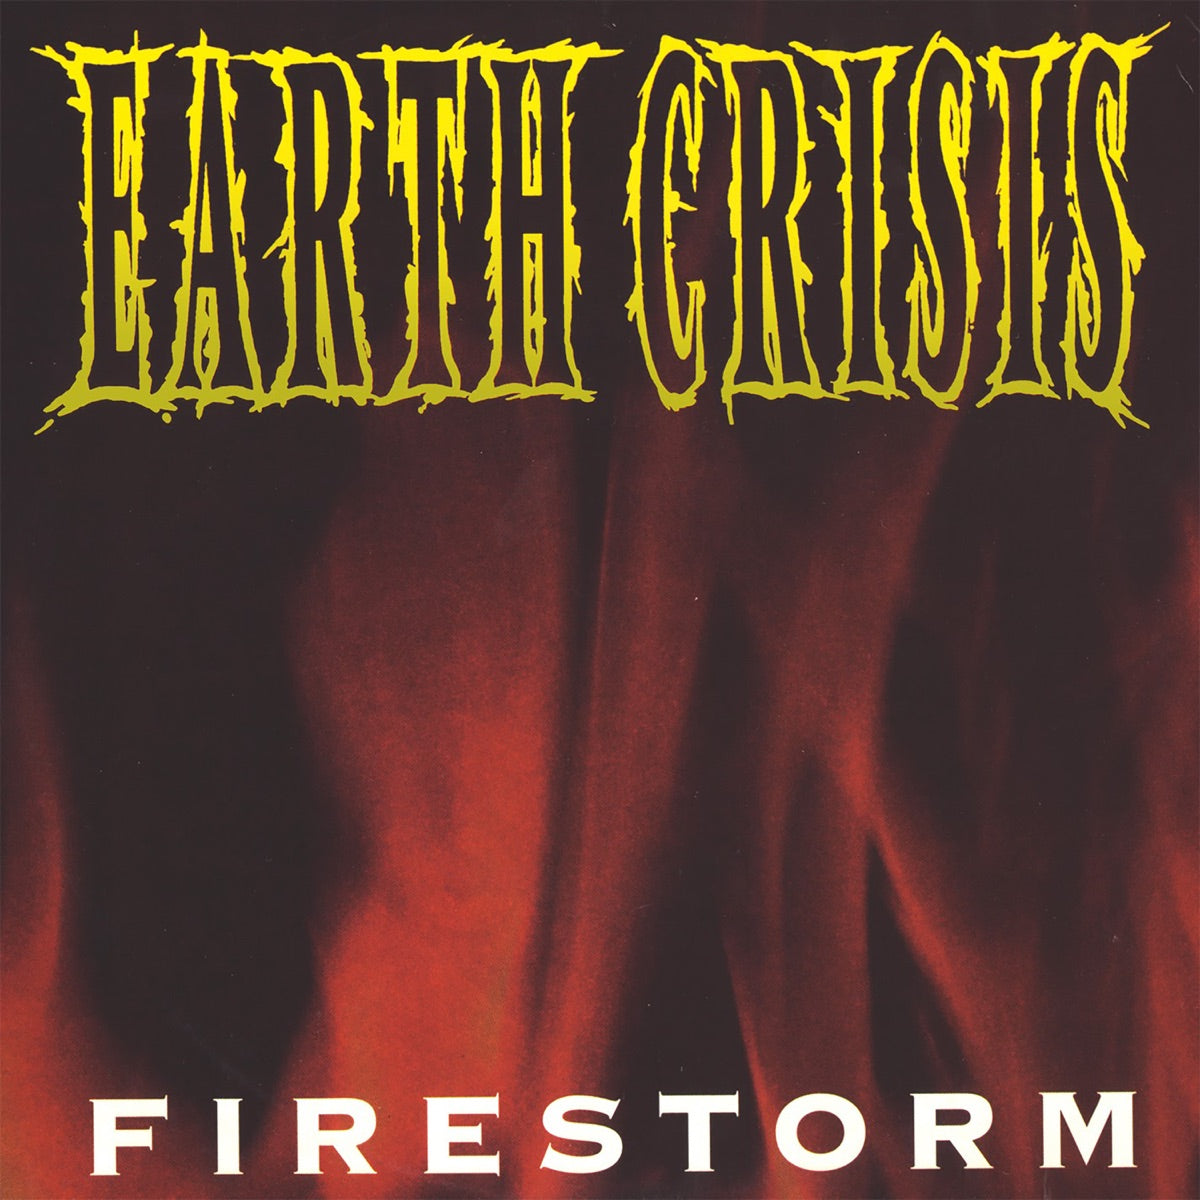 EARTH CRISIS "Firestorm" 12"